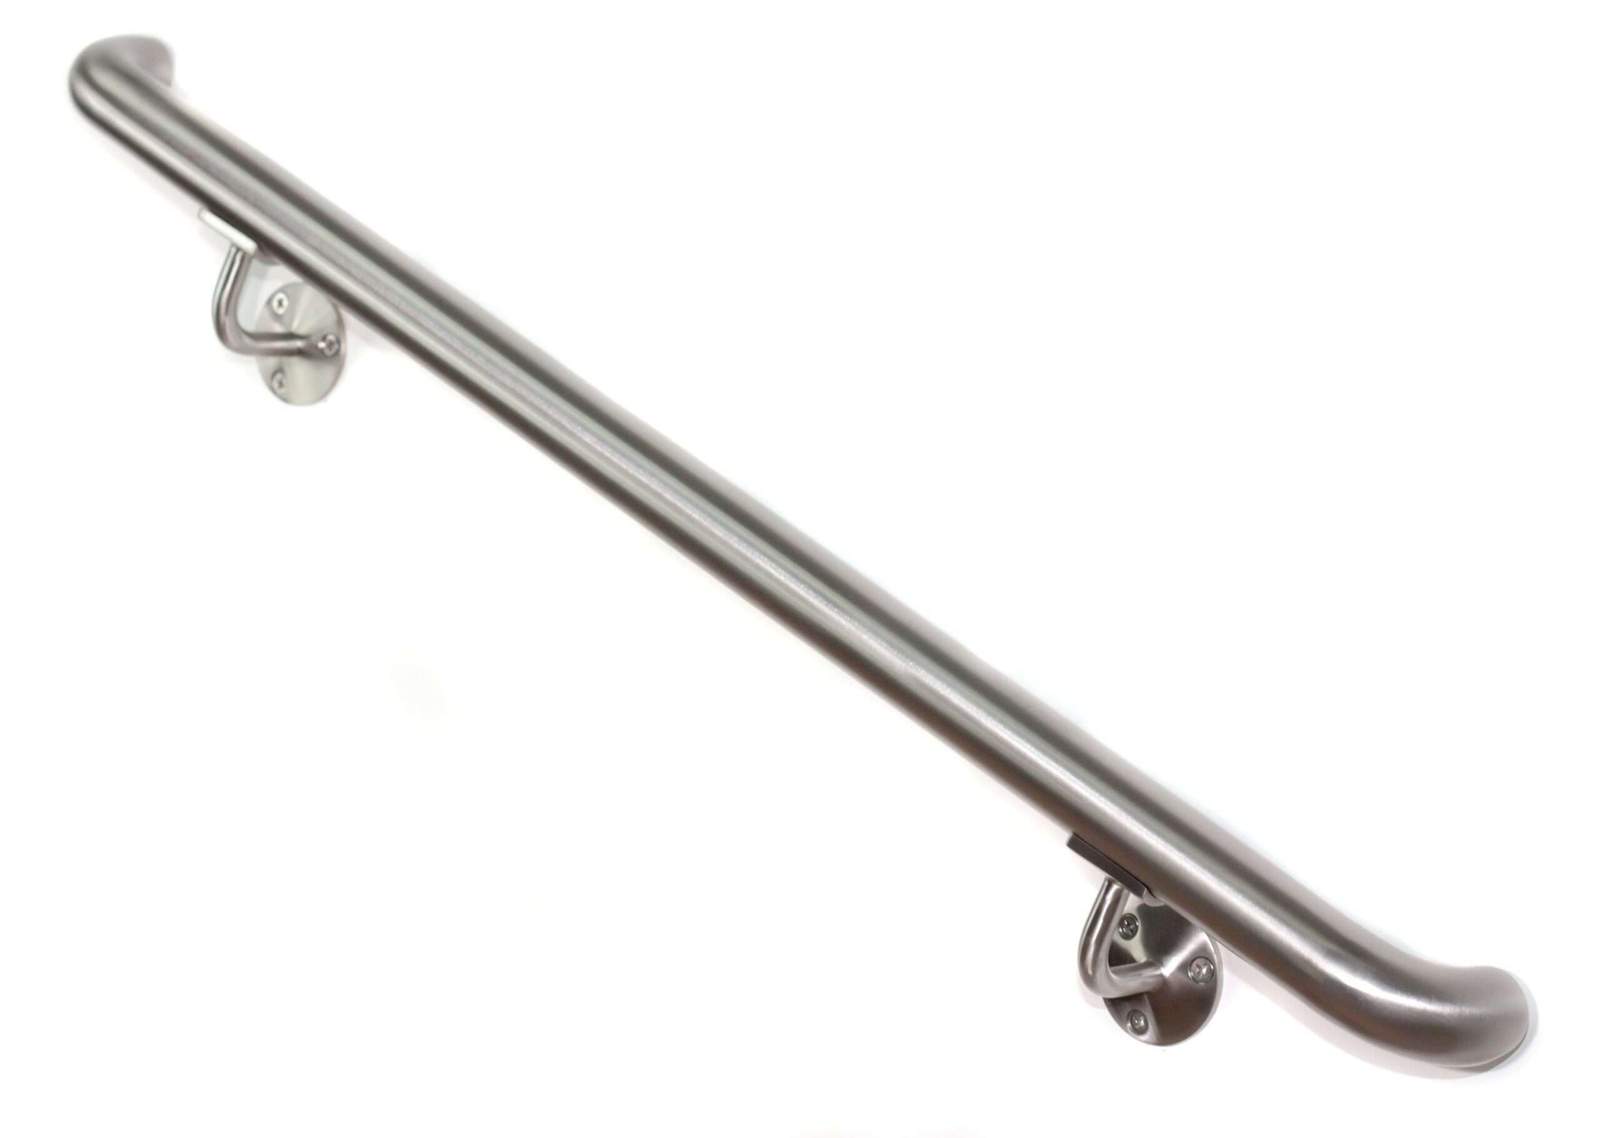 Stainless steel round ADA Handrail brushed nickel – Drywall / Wood stud / 90 in